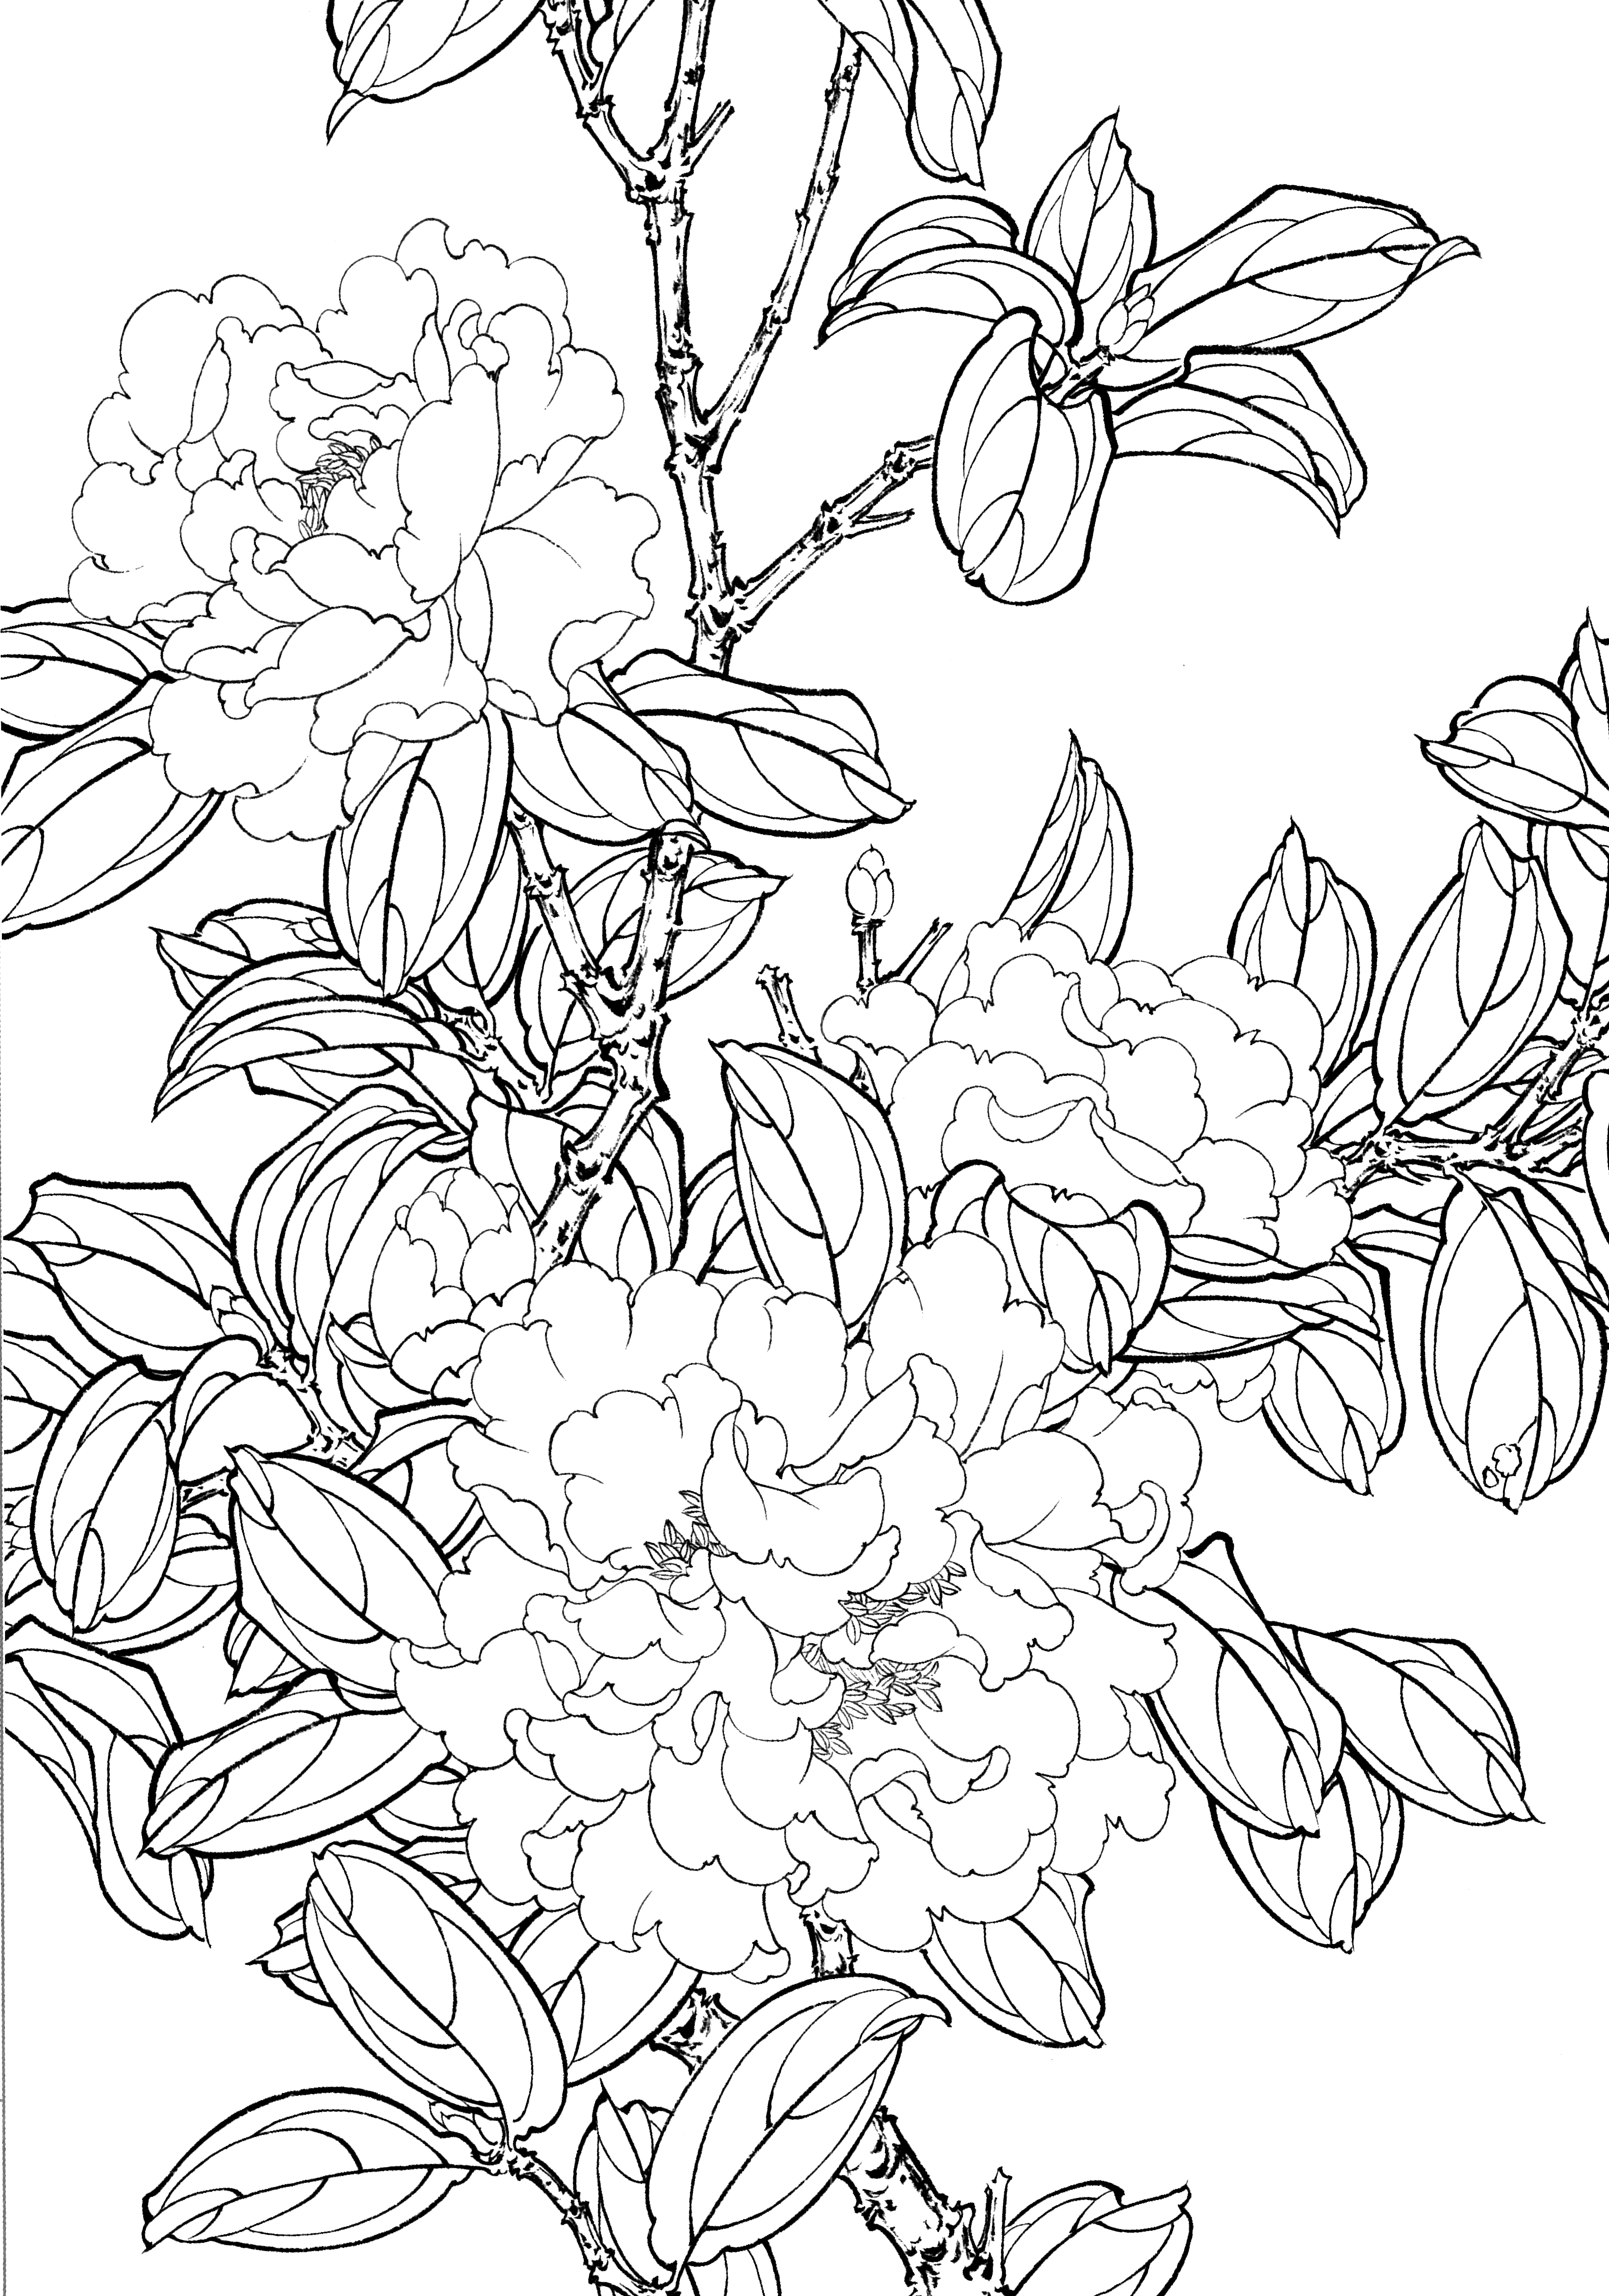 《多品种花卉工笔白描图集》工笔线描图568幅